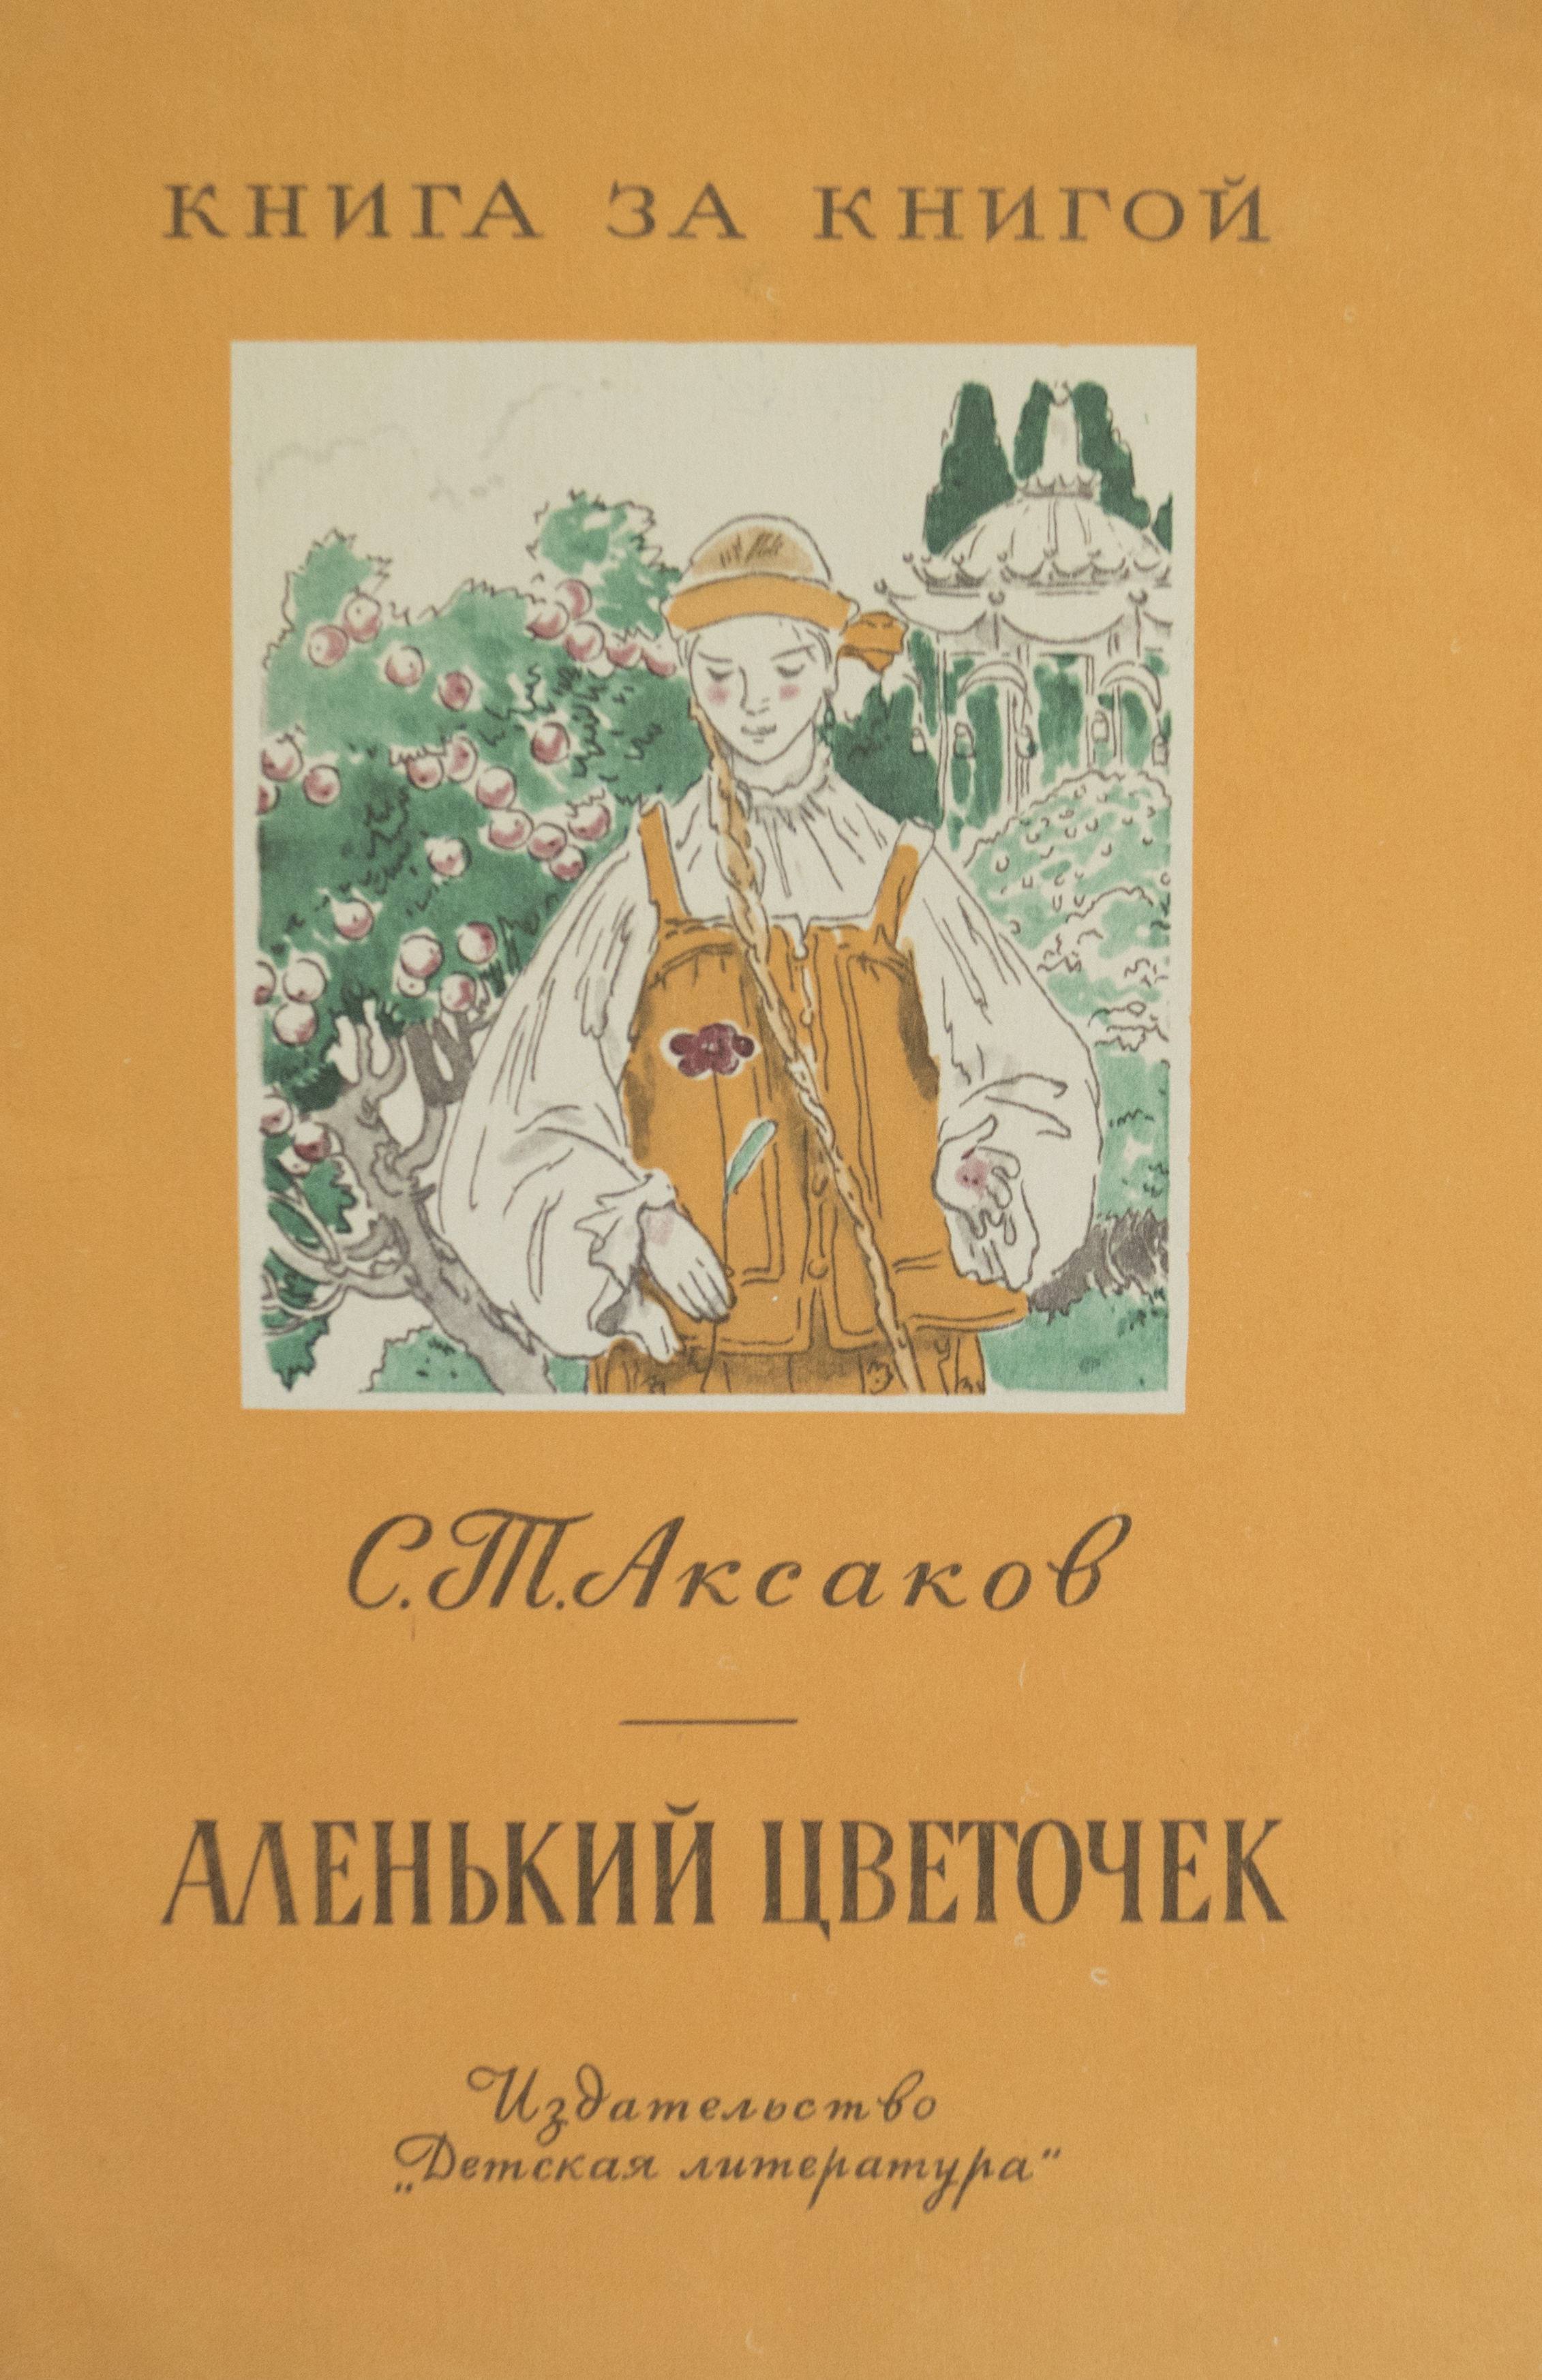 Аксаков с.т. Аленький цветочек детская книжка